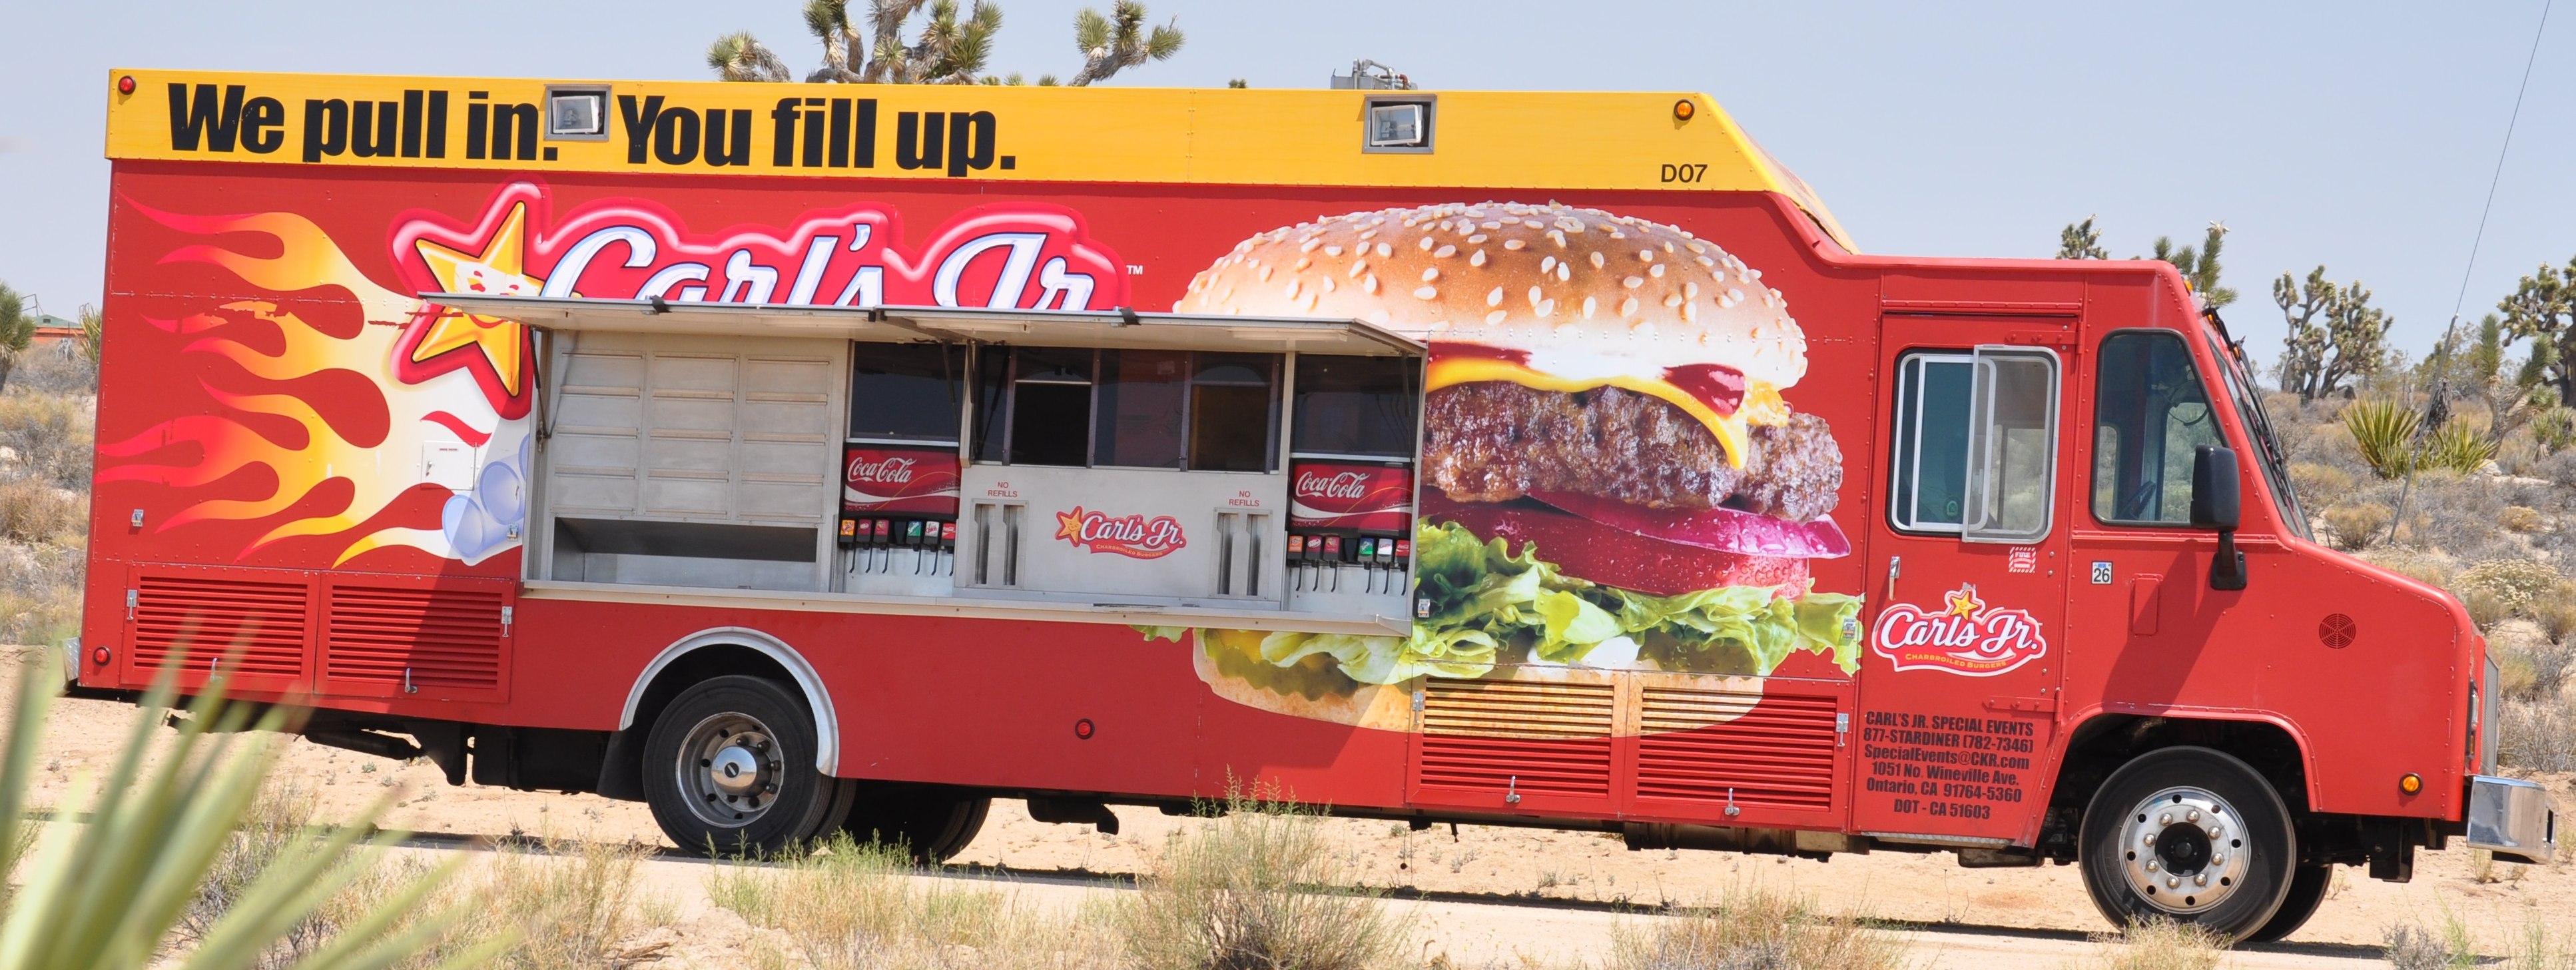  Carl's Jr. Food Truck